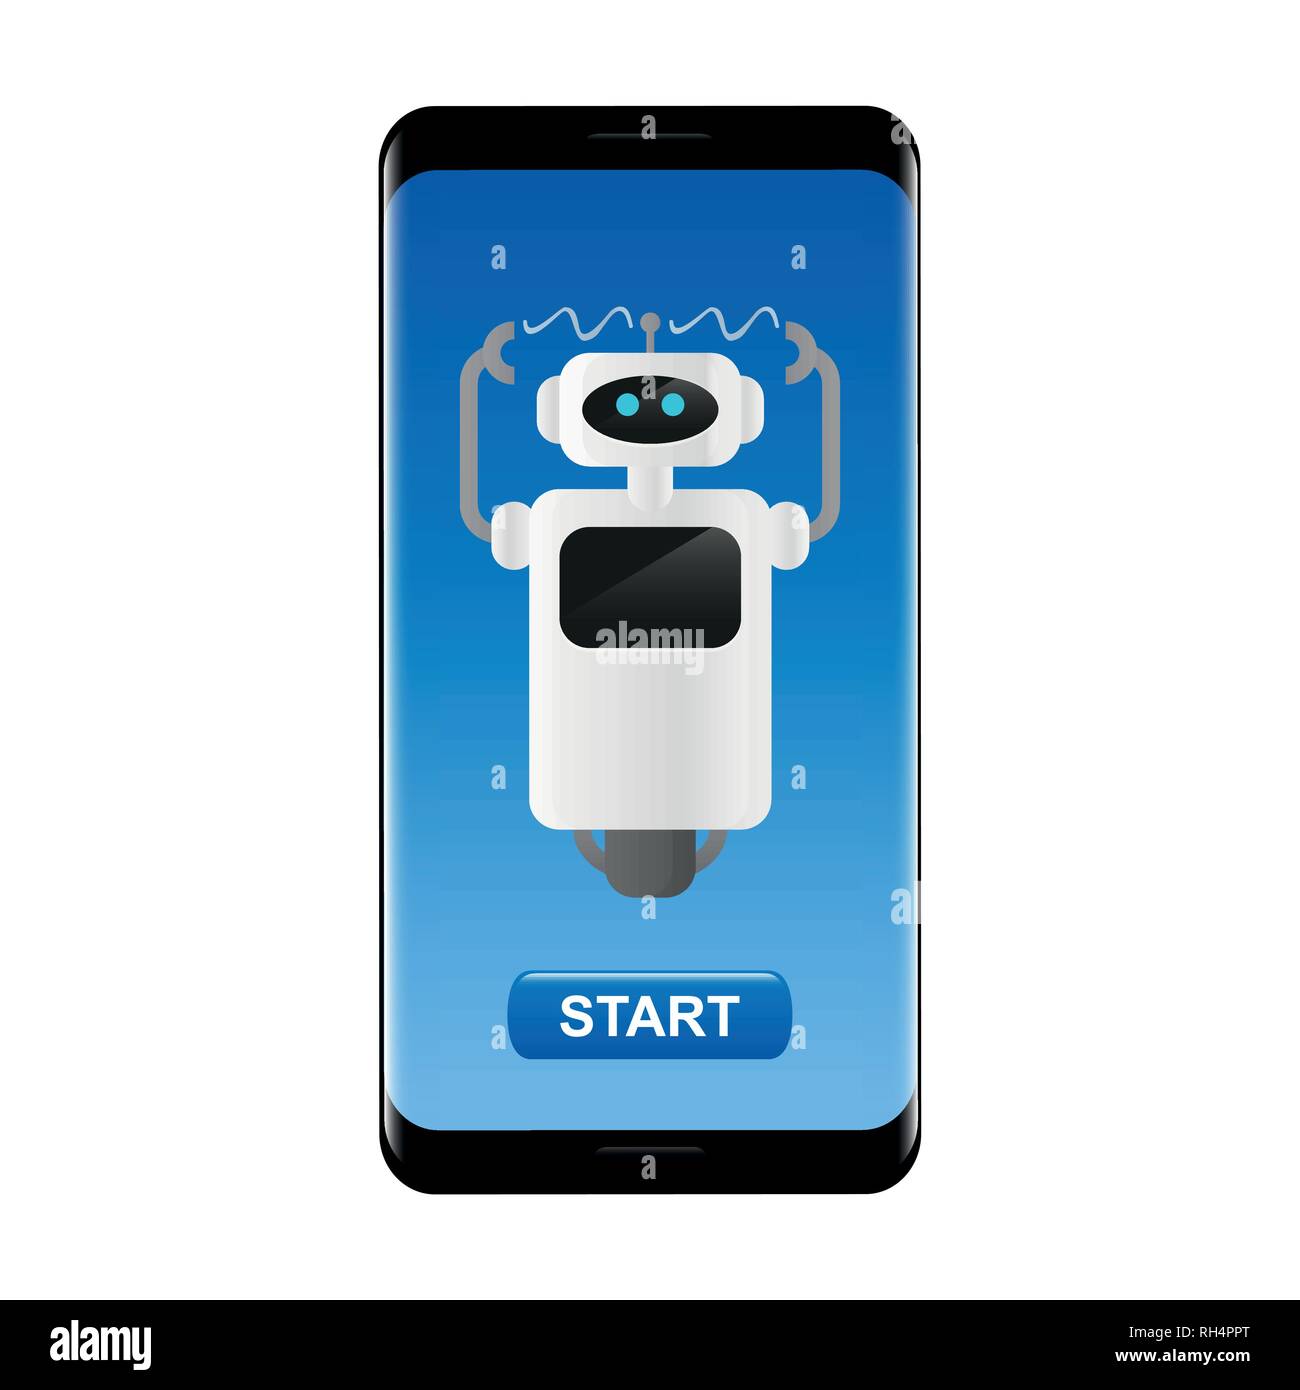 Cute arbeiten Roboter in ein Smartphone mit Schaltfläche Start Vektor-illustration EPS 10. Stock Vektor